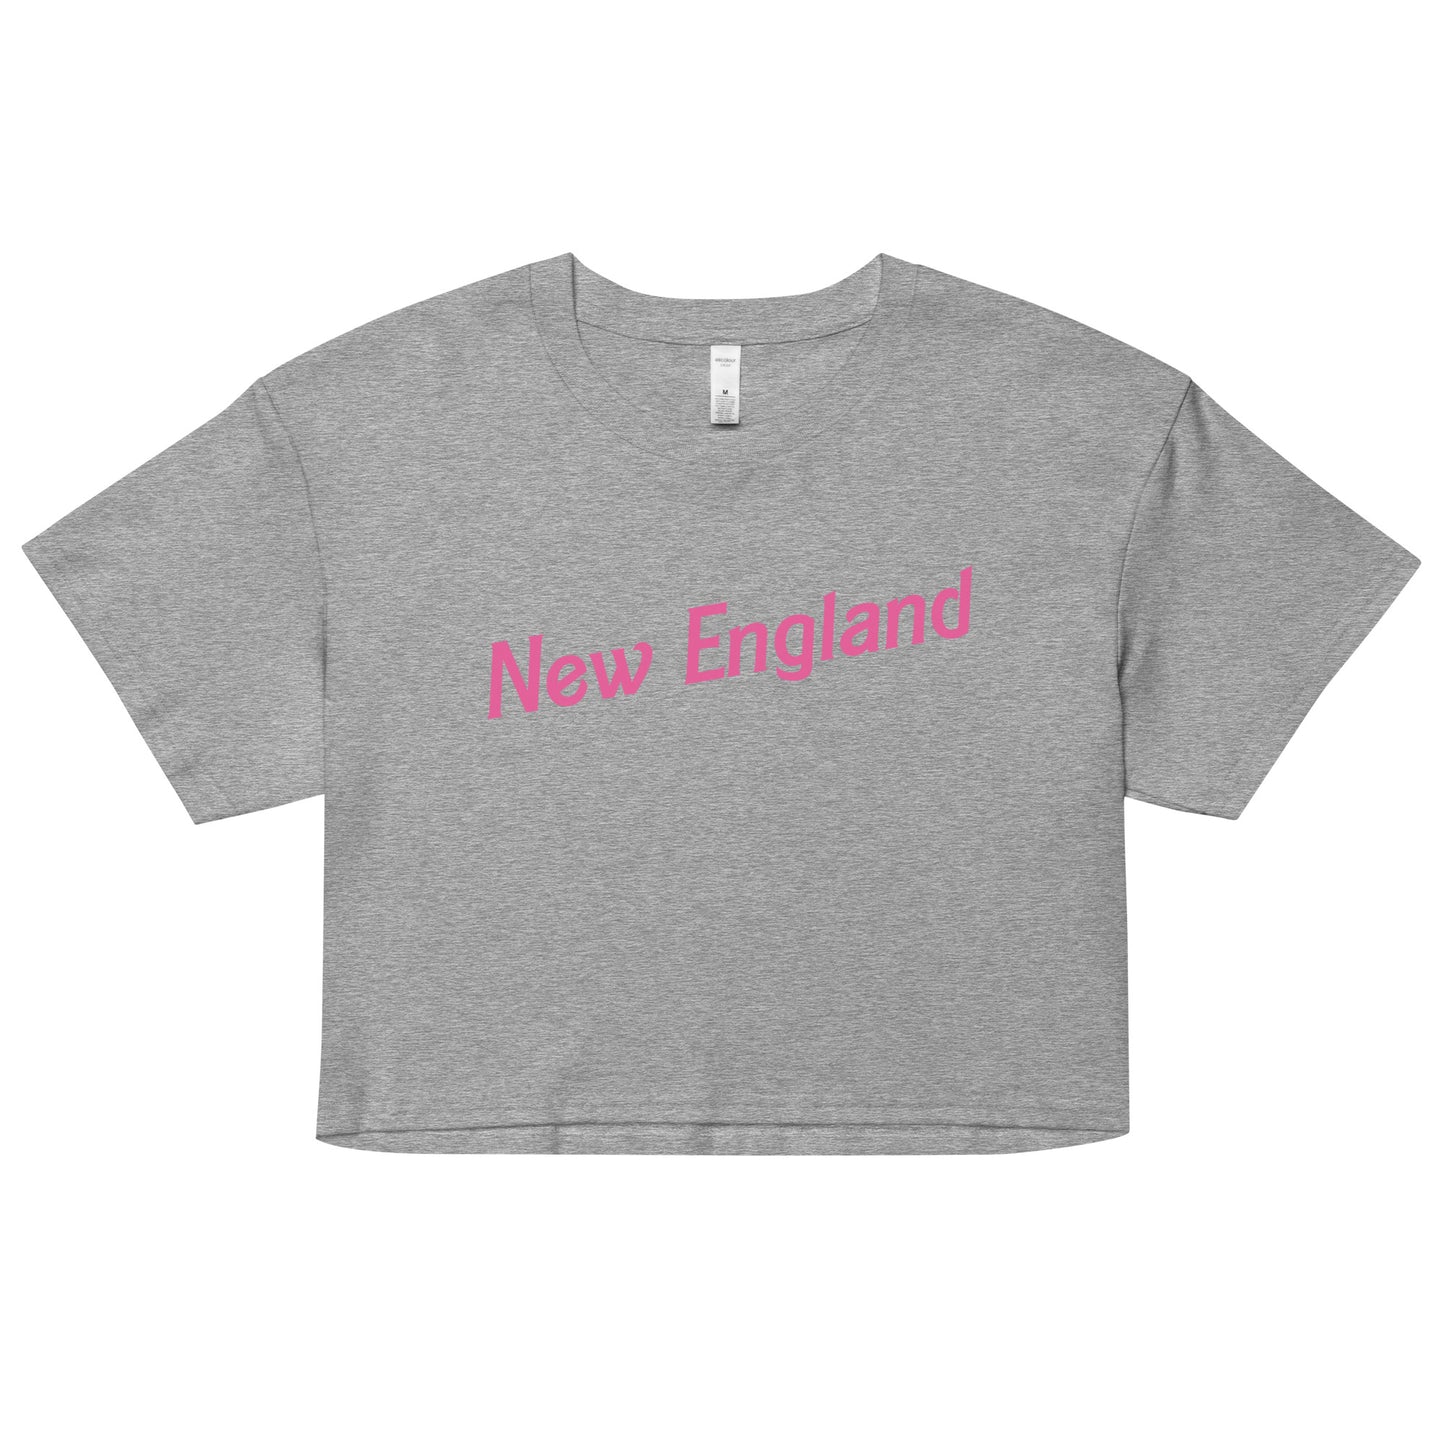 Pink New England Crop Top